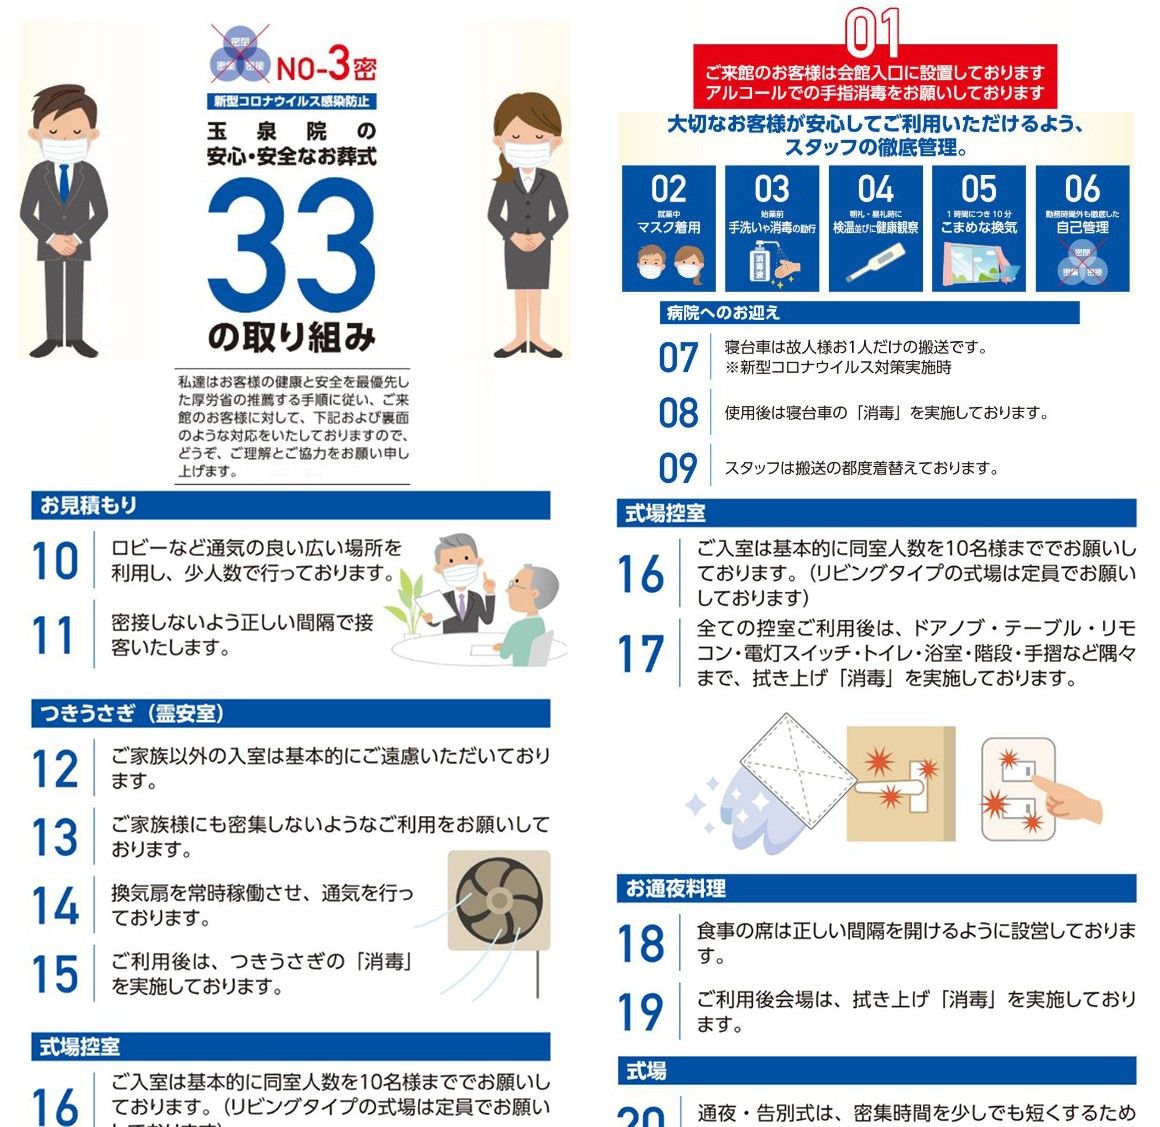 京阪互助中心公之于众的“安全放心33条”